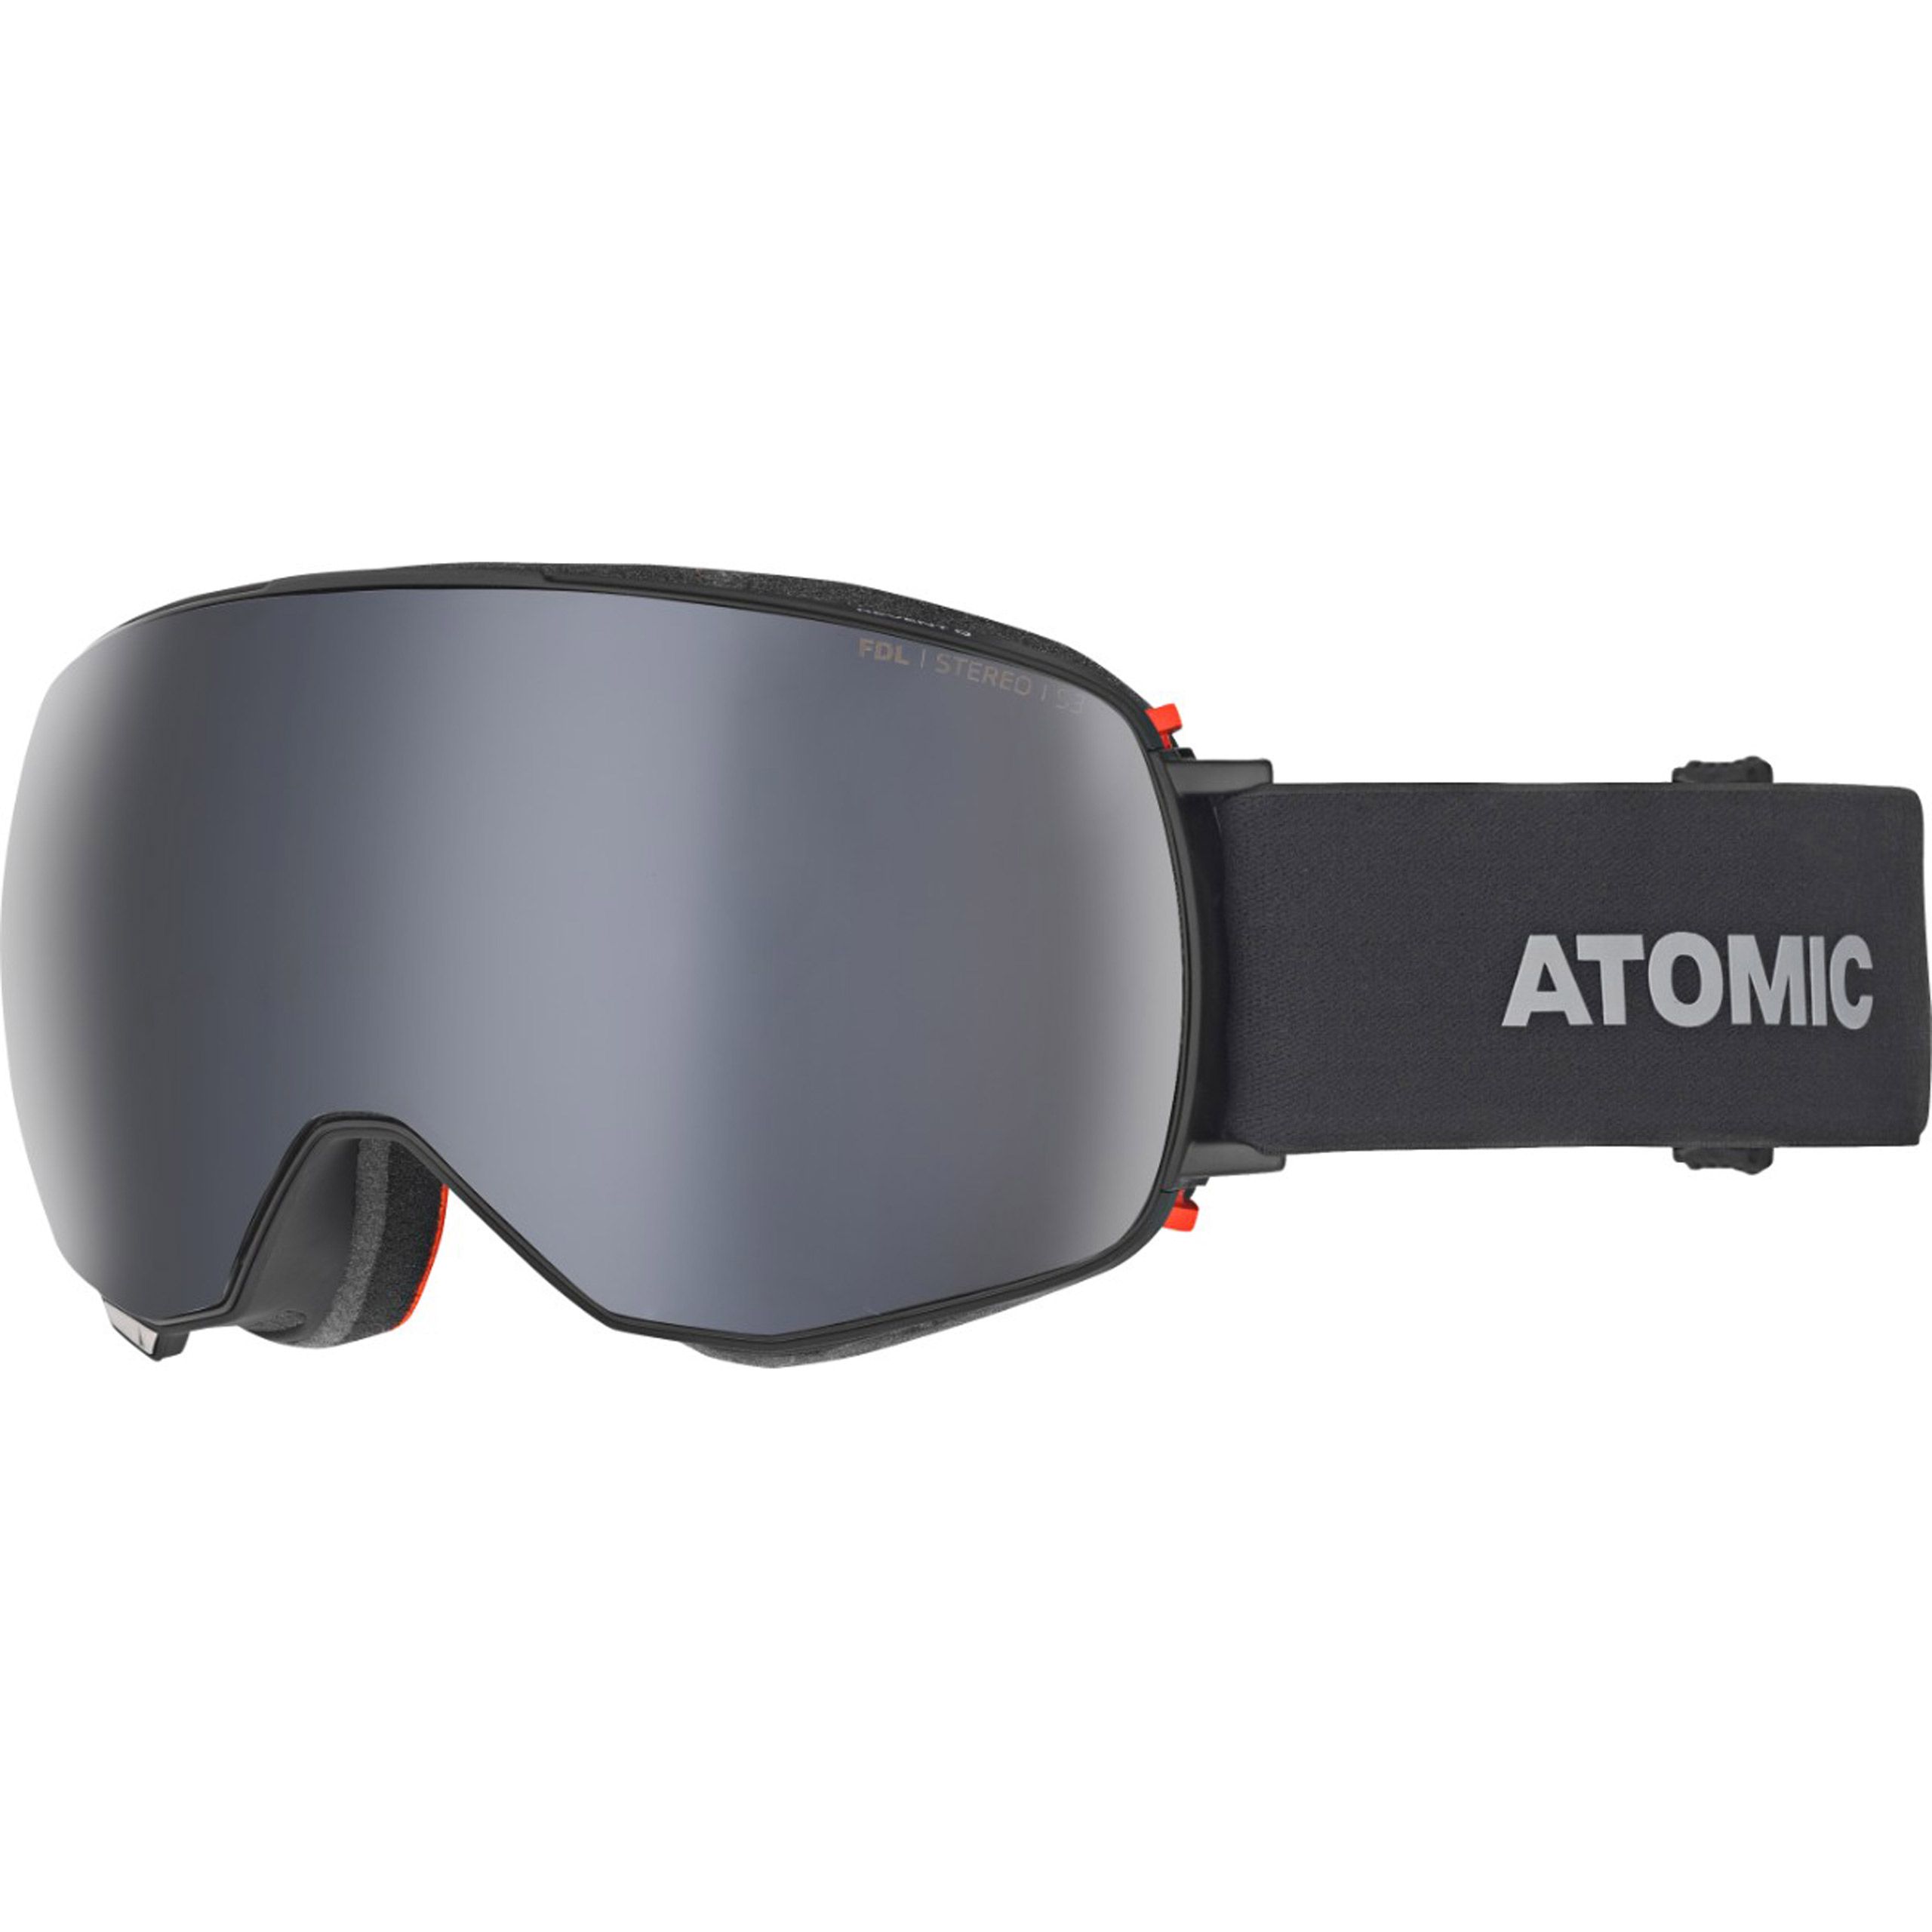 Atomic Mens Revent Q Stereo Ski Goggles